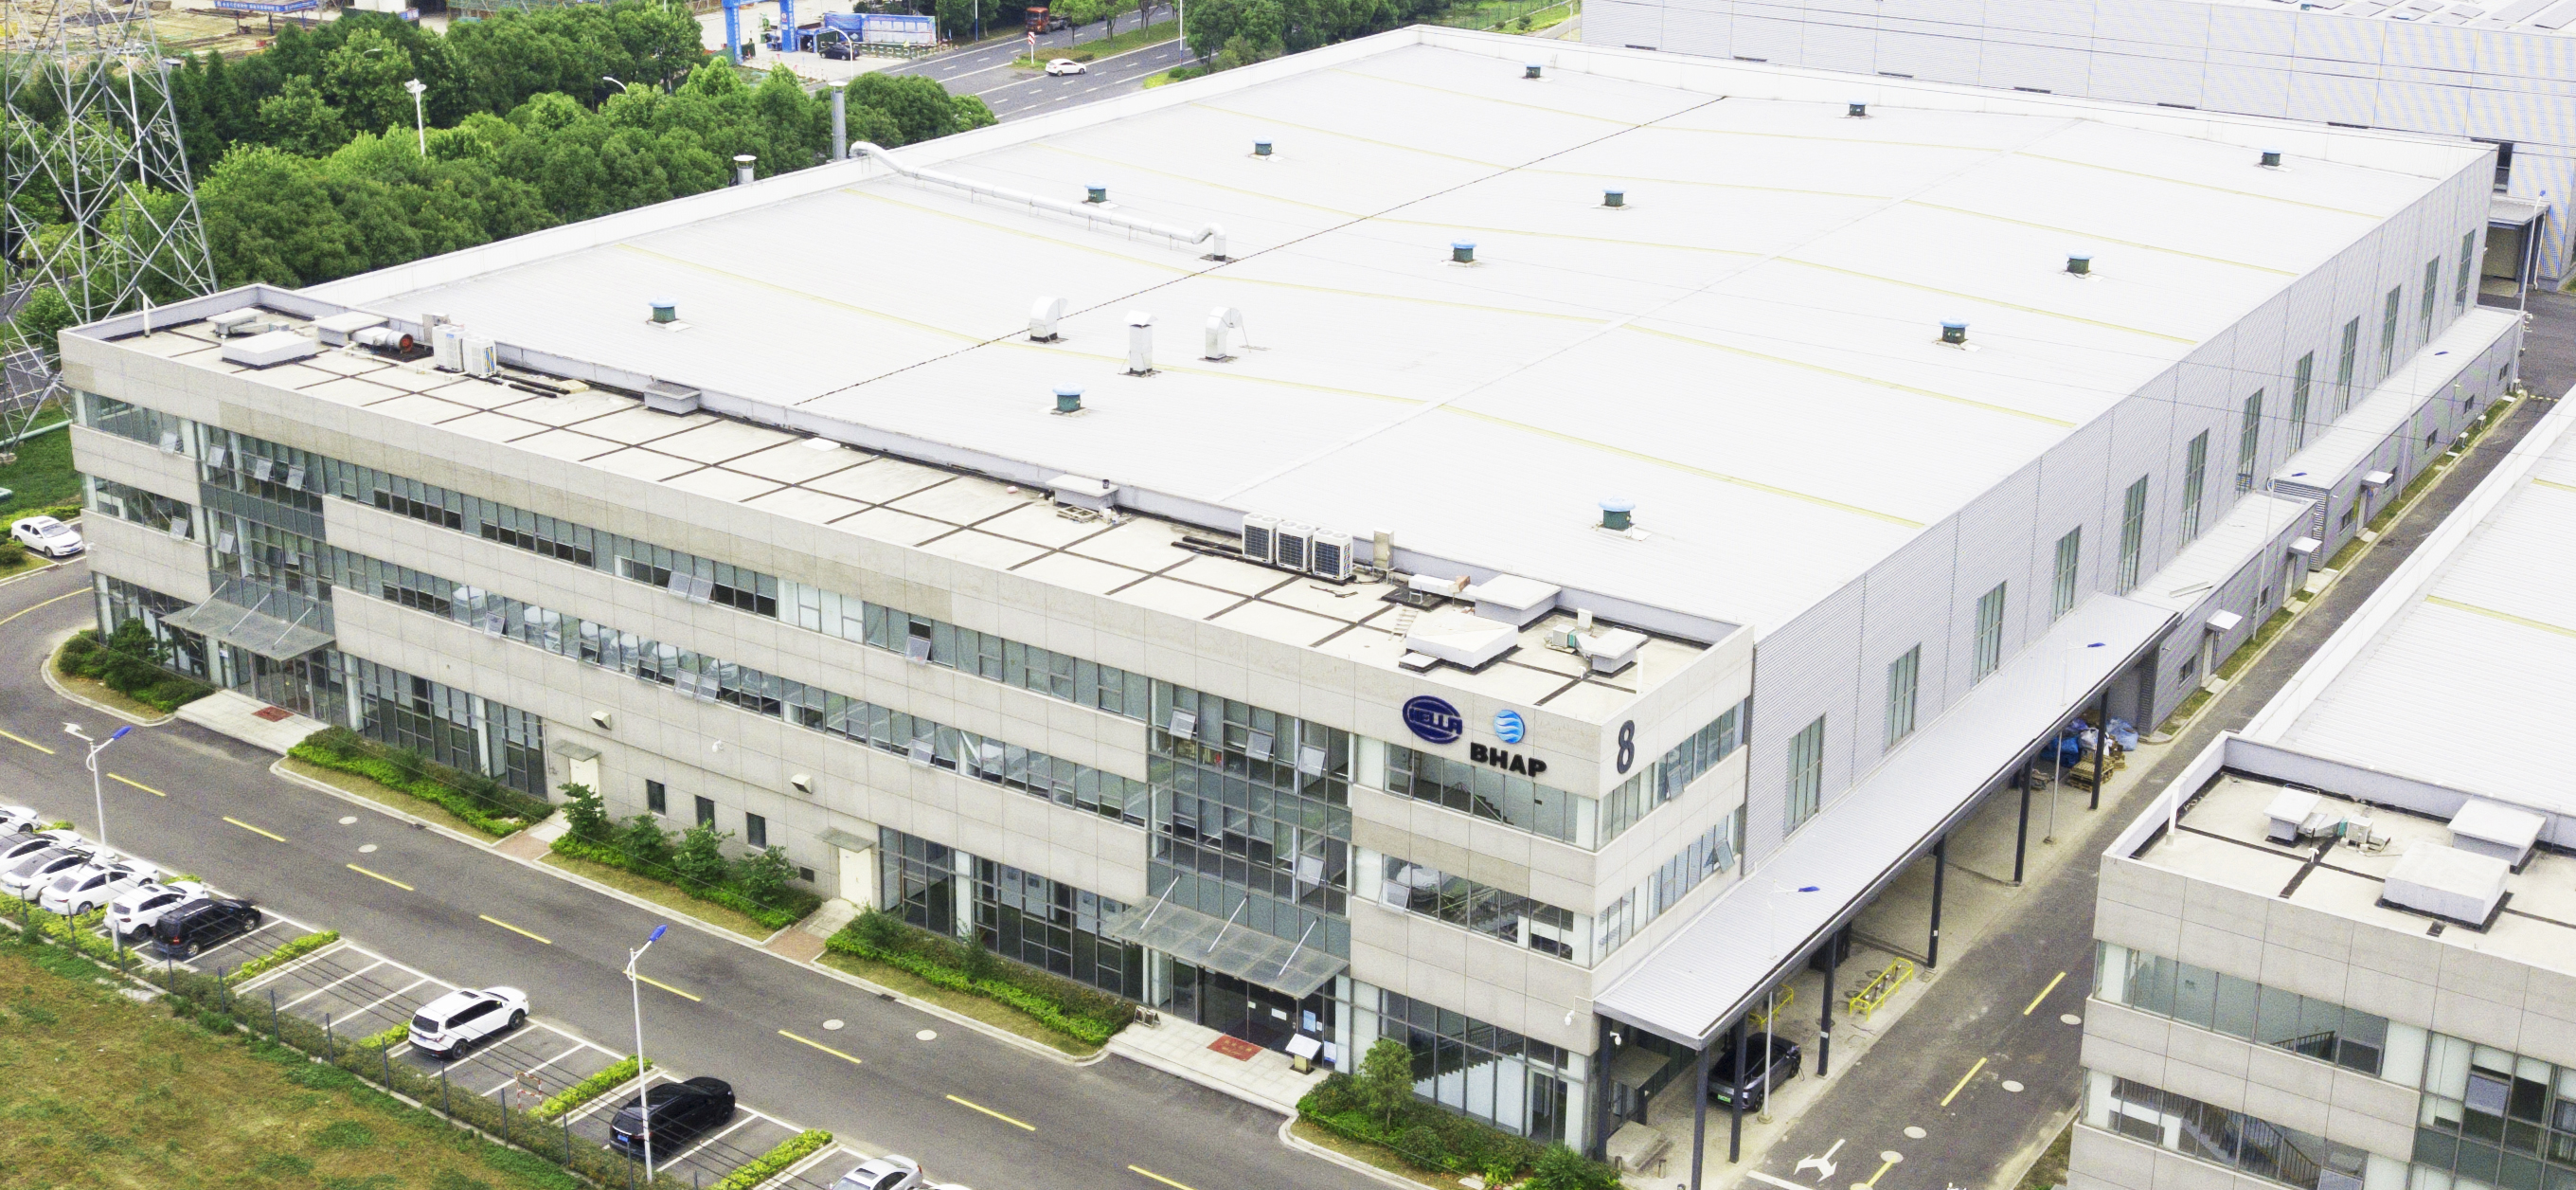 HELLA расширяет производственные мощности в Китае и открывает новый завод по производству осветительных приборов совместно с партнером по совместному предприятию BHAP.